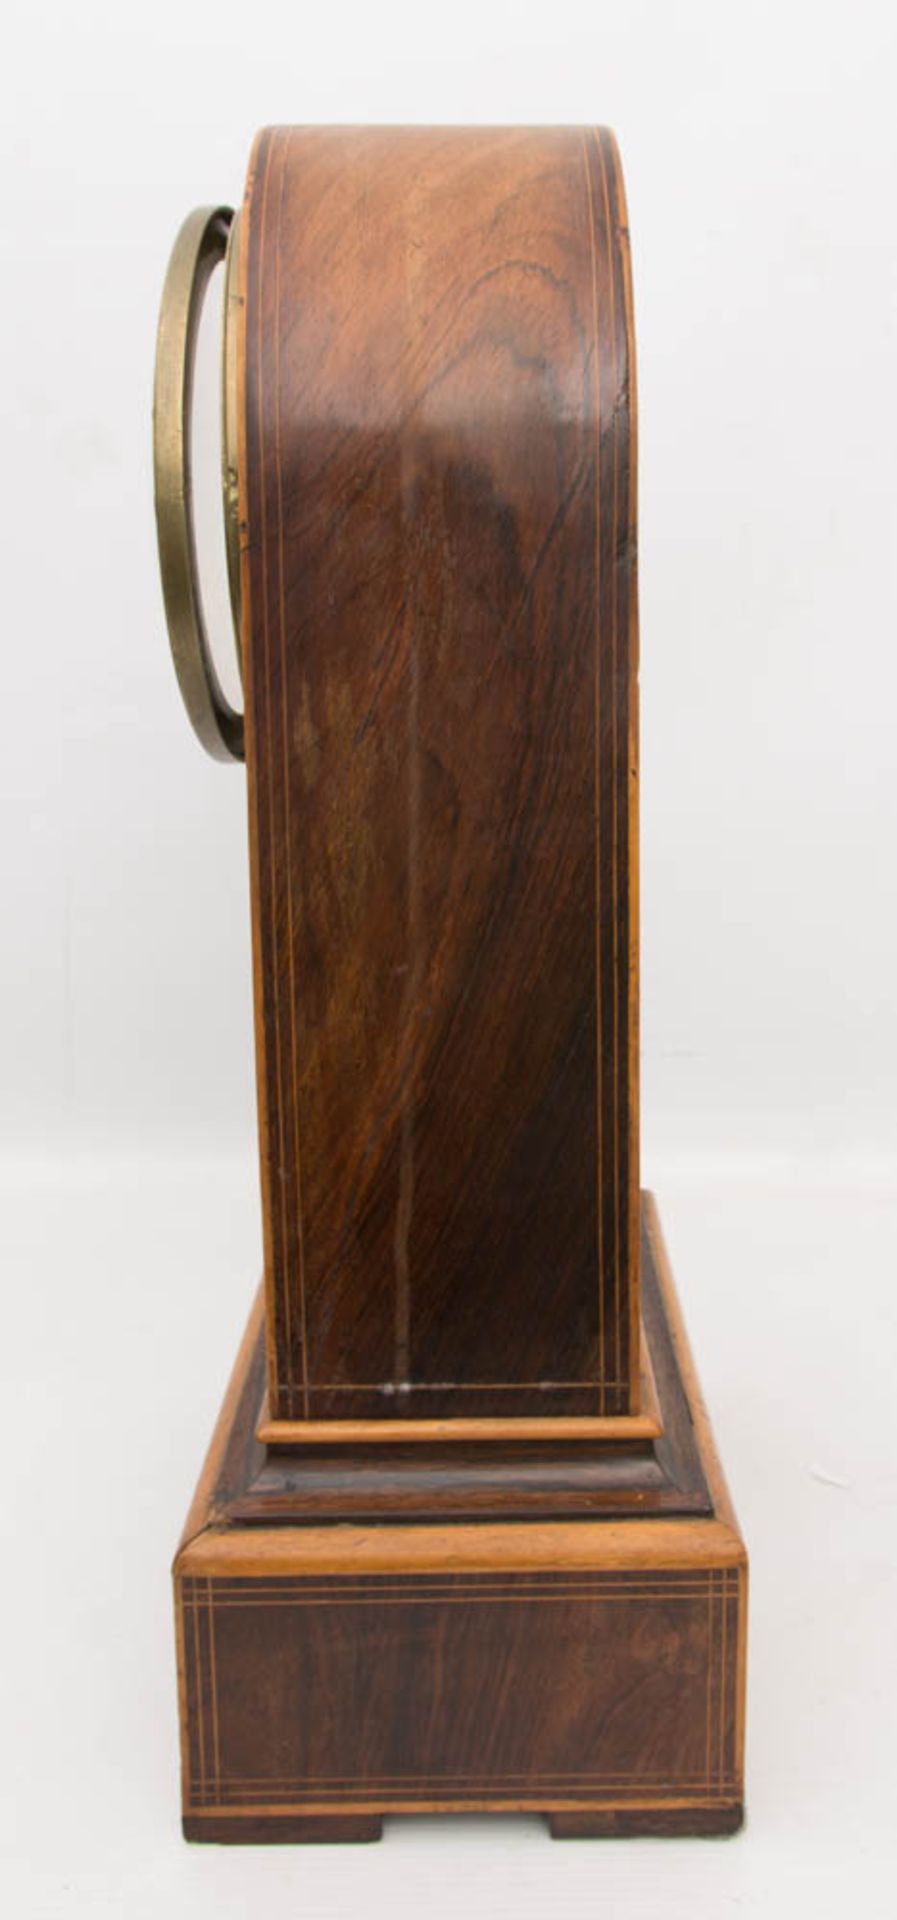 FRANZÖSISCHE PENDULE, um 1850,Halbstunden und Stundenschlag auf Glocke. Mit Schlussscheibe. Pendel - Image 6 of 6